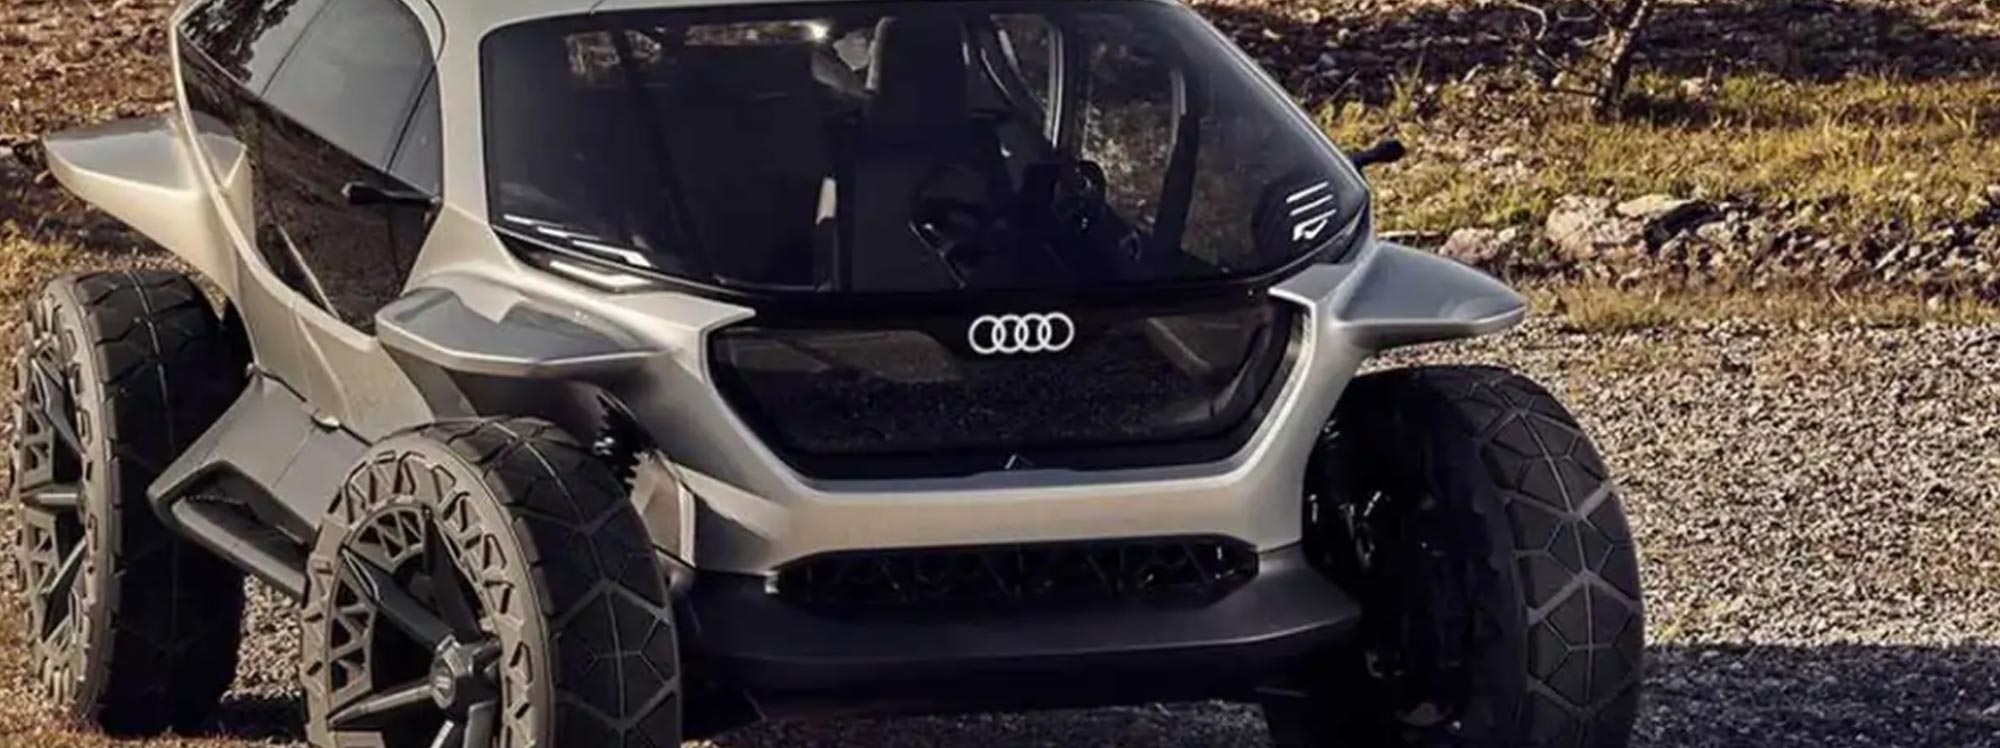 Audi en busca de su propia pick up